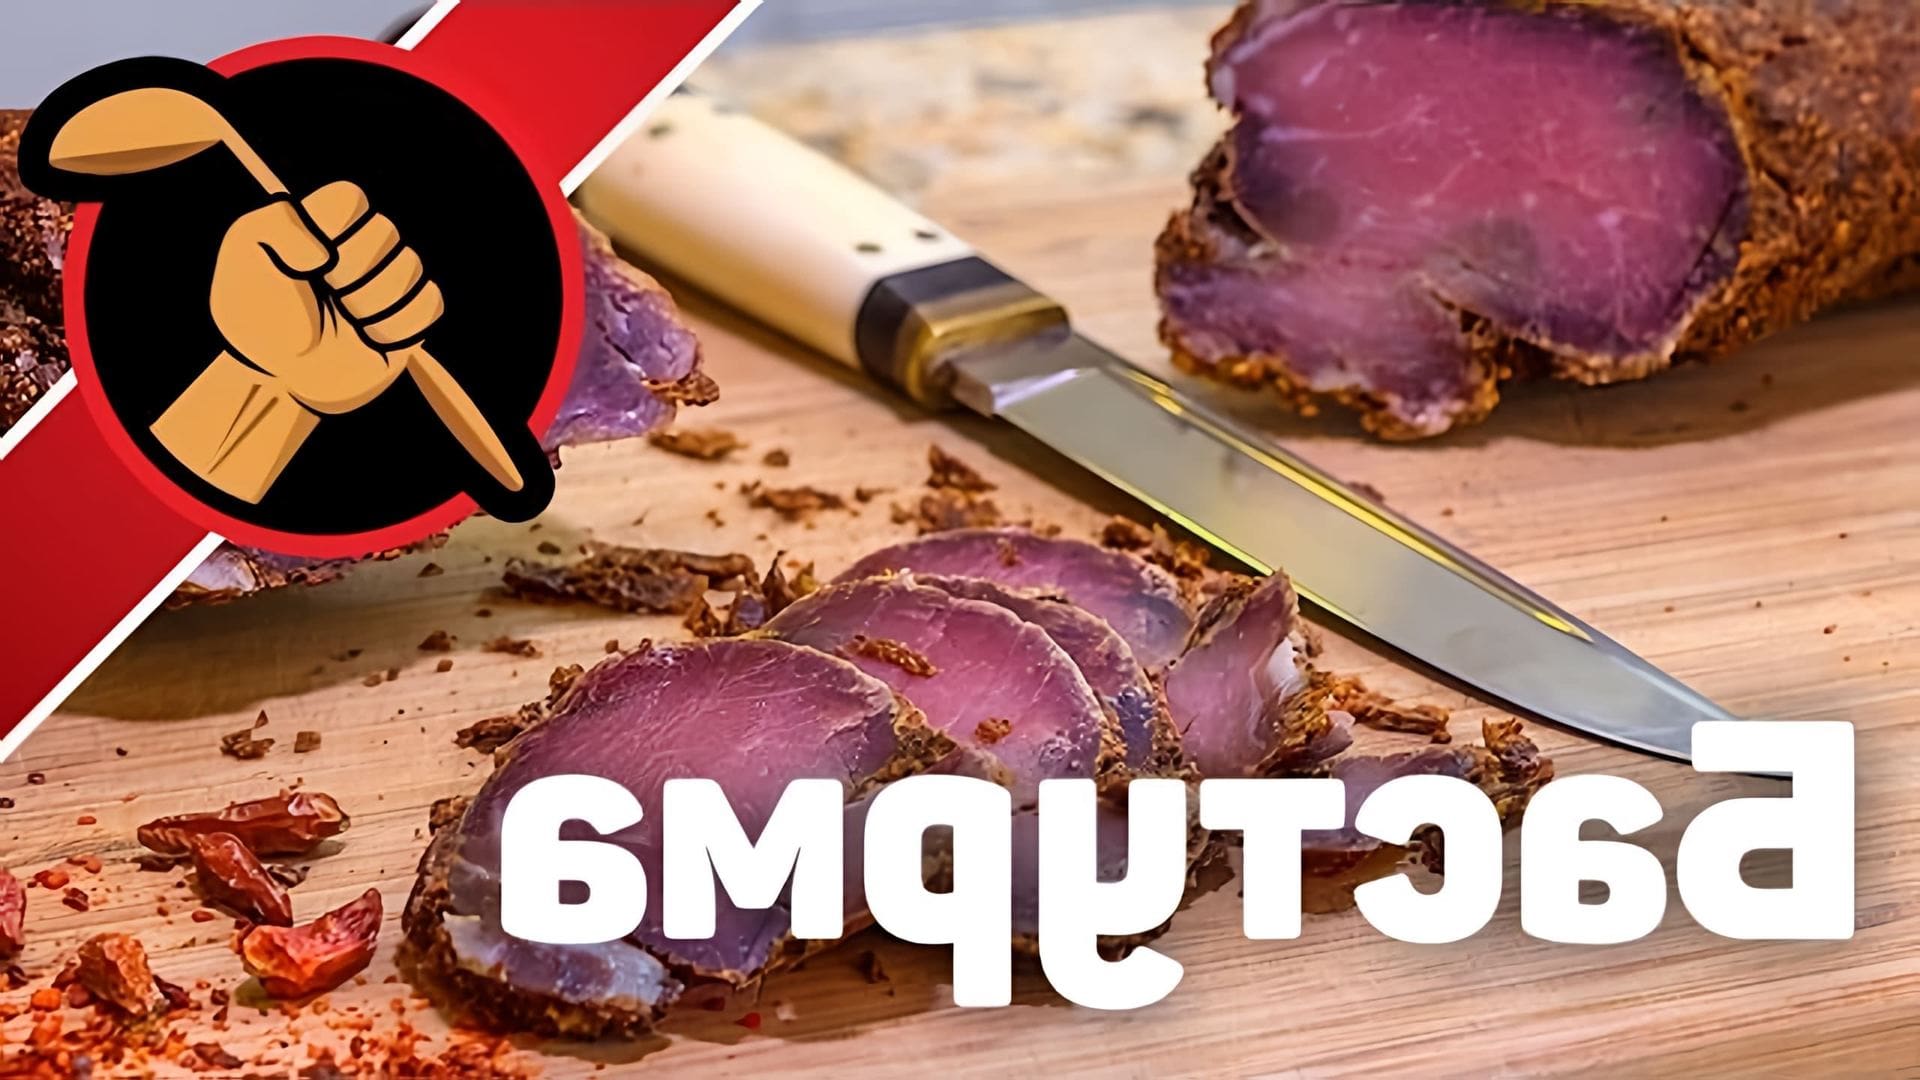 В этом видео демонстрируется процесс приготовления бастурмы - традиционного турецкого блюда из мяса